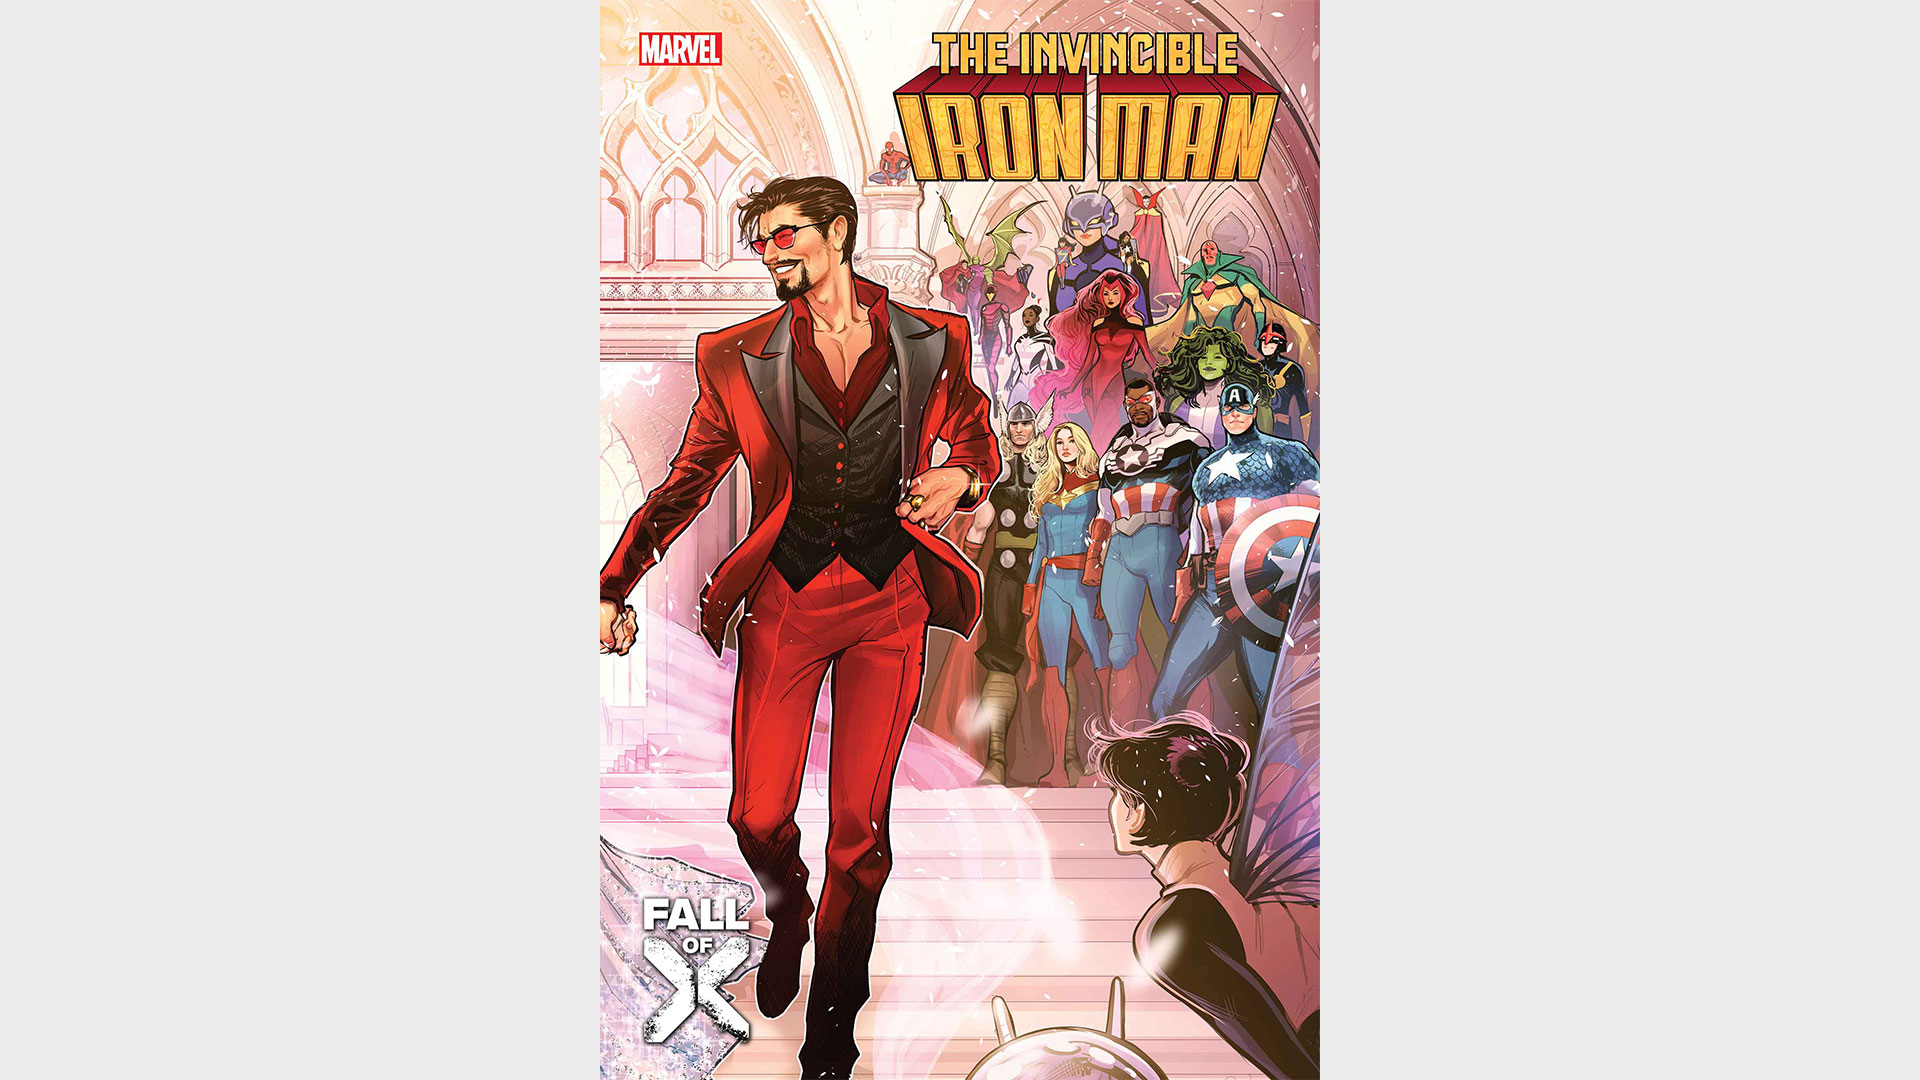 Couverture de l'Invincible Iron Man #10